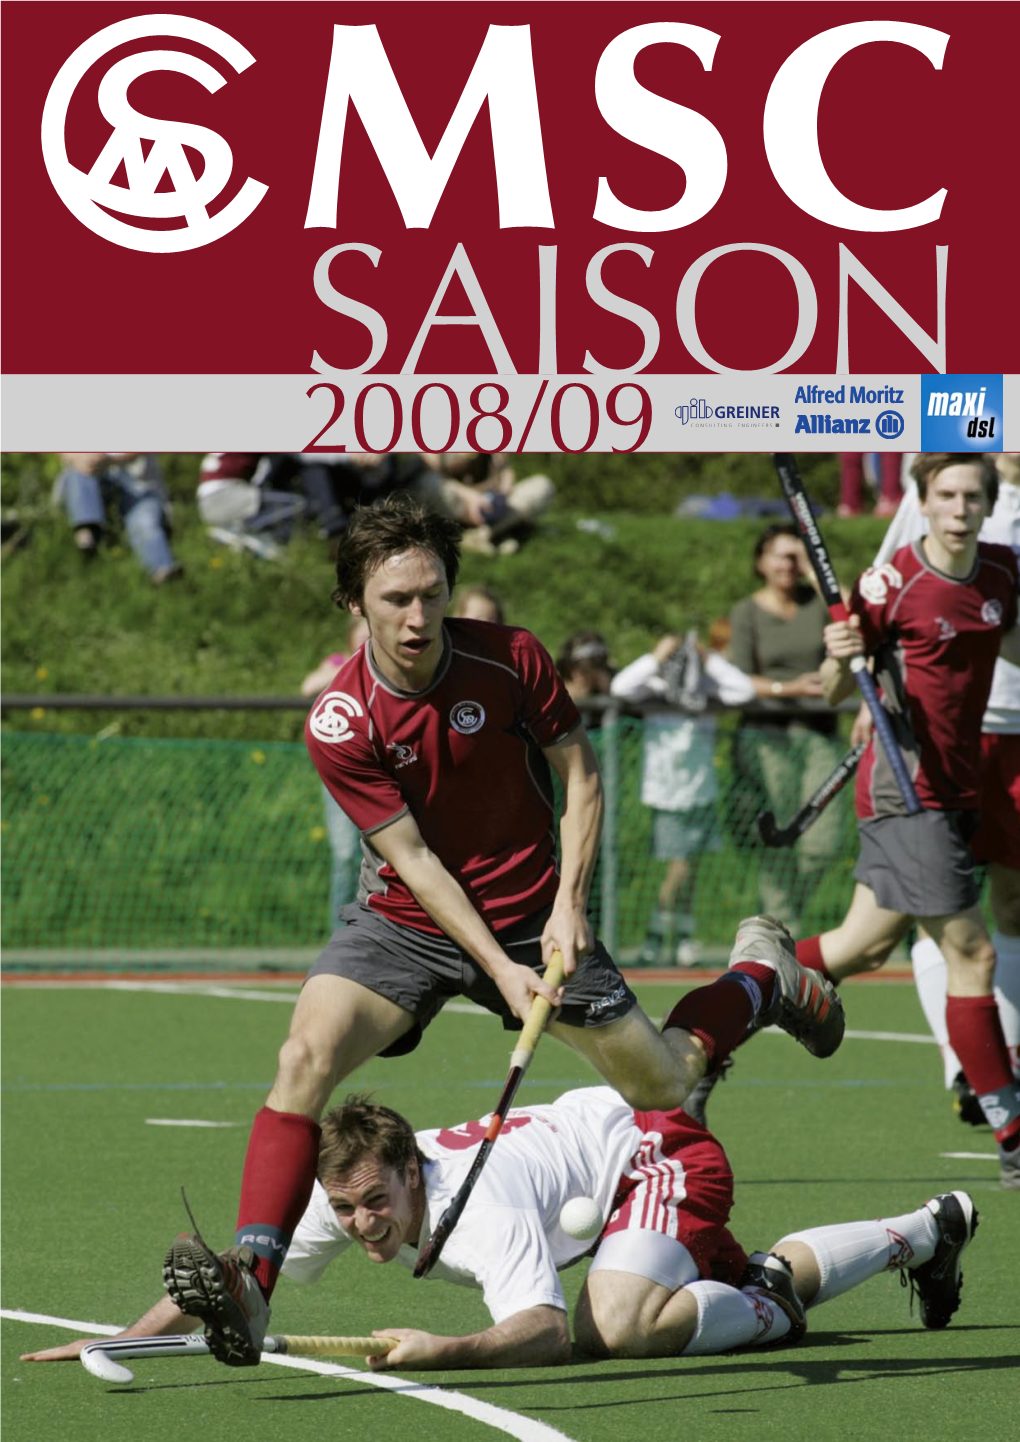 MSC SAISON 2008/09 Anzeige Maxi DSL VORWORT